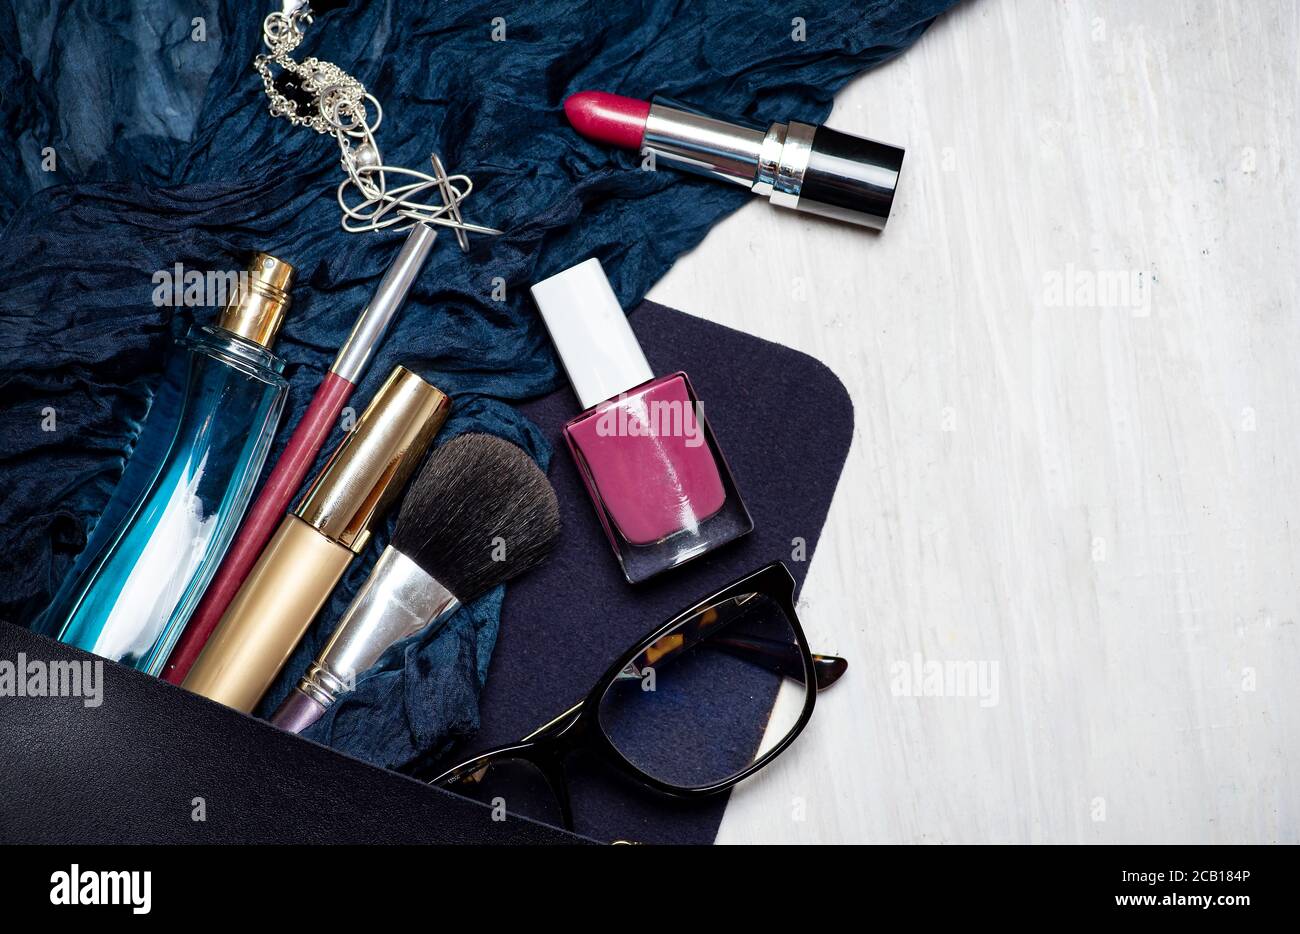 Verschiedene Make-up und kosmetische Produkte fallen aus einer weiblichen Tasche Tischplatte flach legen. Mehrere Parfüms Lippenstifte Nagellacke und Pinsel ein anderes ac Stockfoto